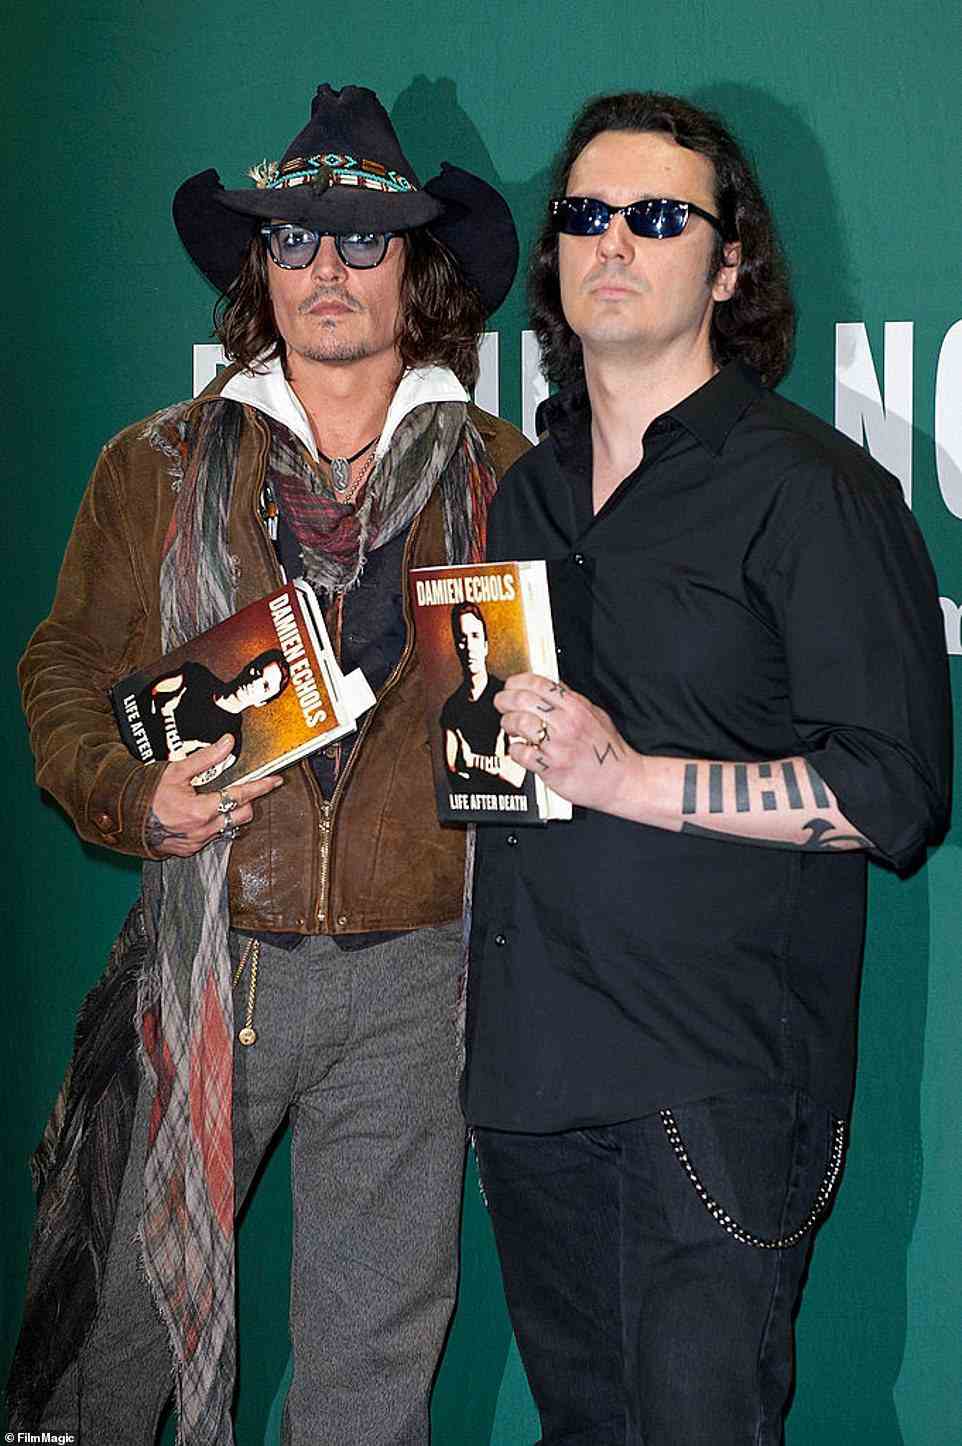 Johnny Depp (abgebildet mit Echols im Jahr 2012) gehörte zu den Prominenten, die sich für die Freiheit der West Memphis Three einsetzten, nachdem DNA-Tests ergaben, dass es keine physischen Beweise gegen sie gab